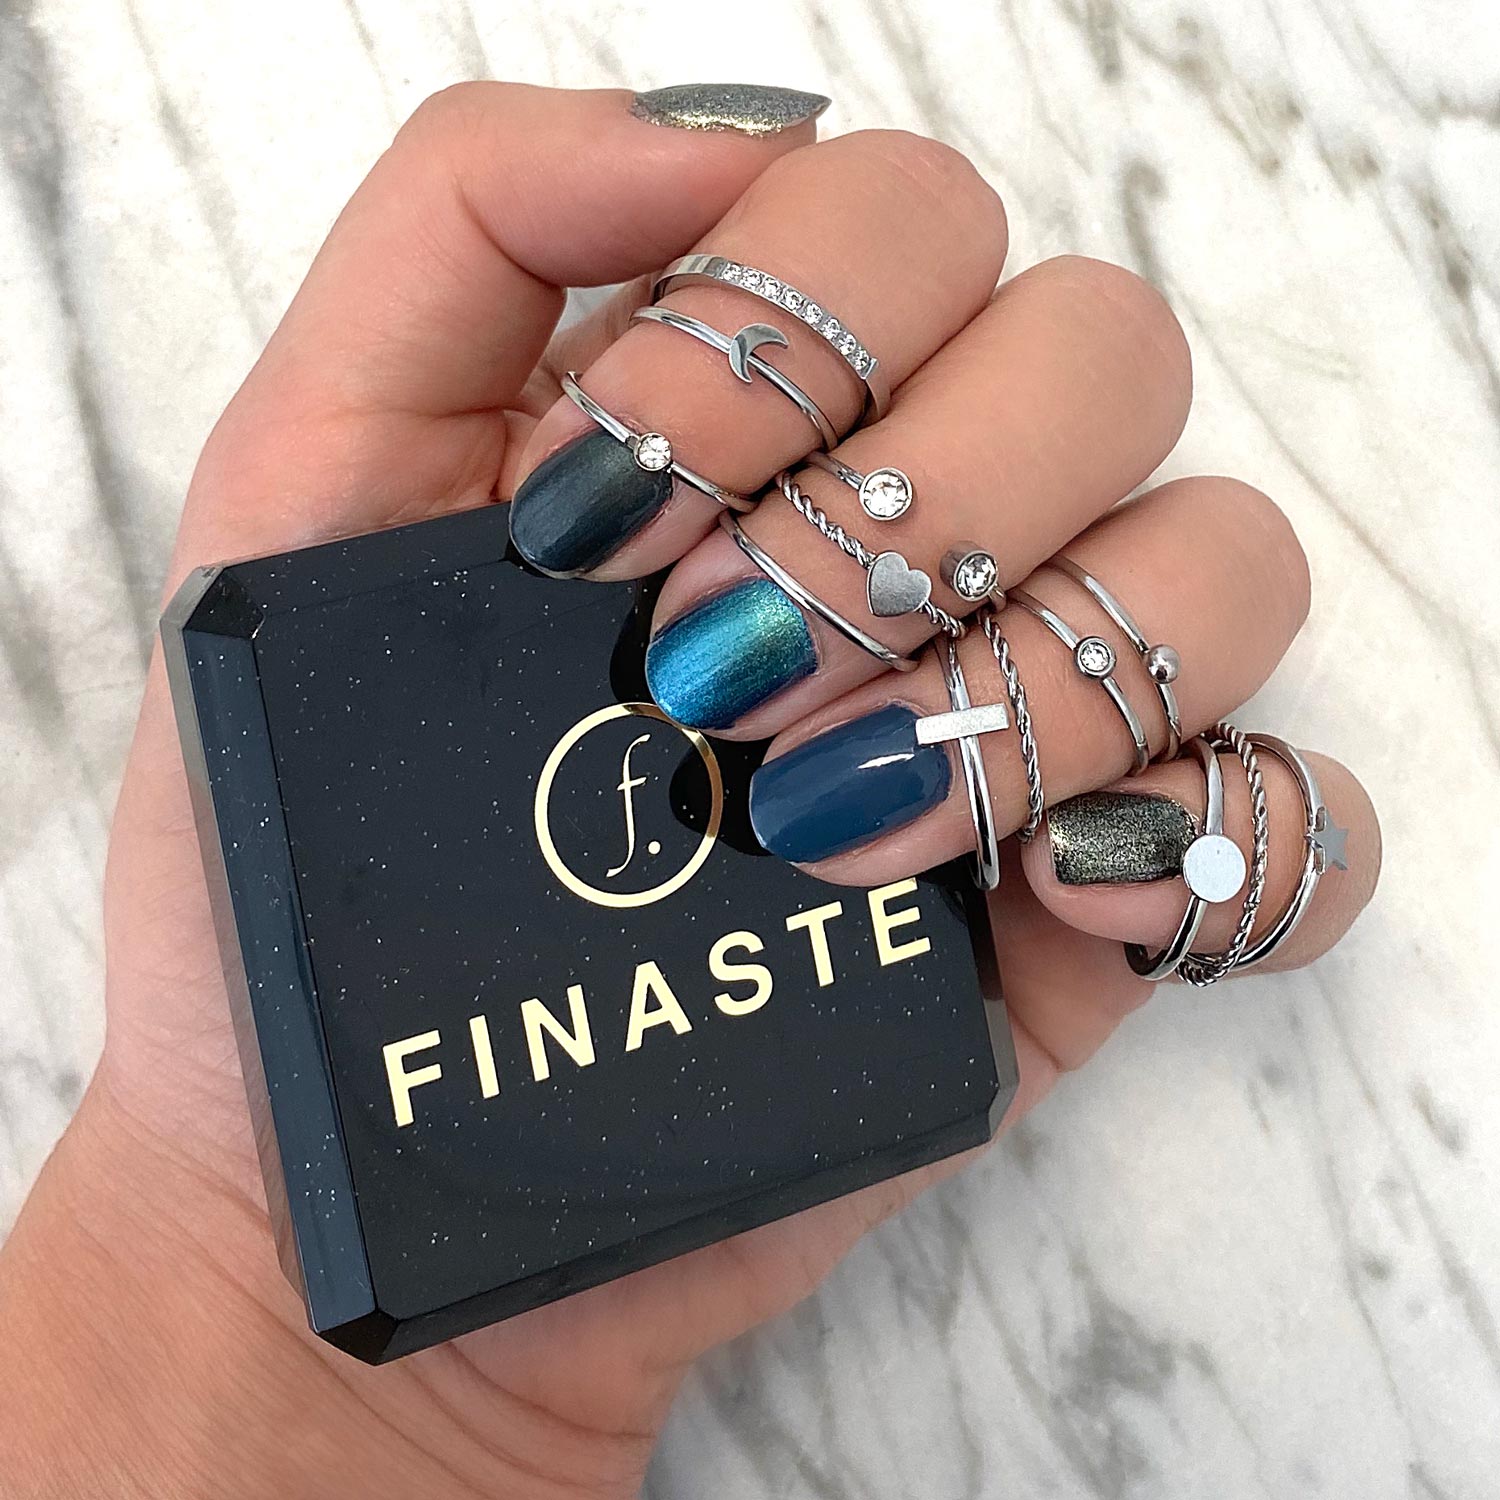 Zilveren ringen bij hand met blauwe nagellak en finaste sieradendoosje